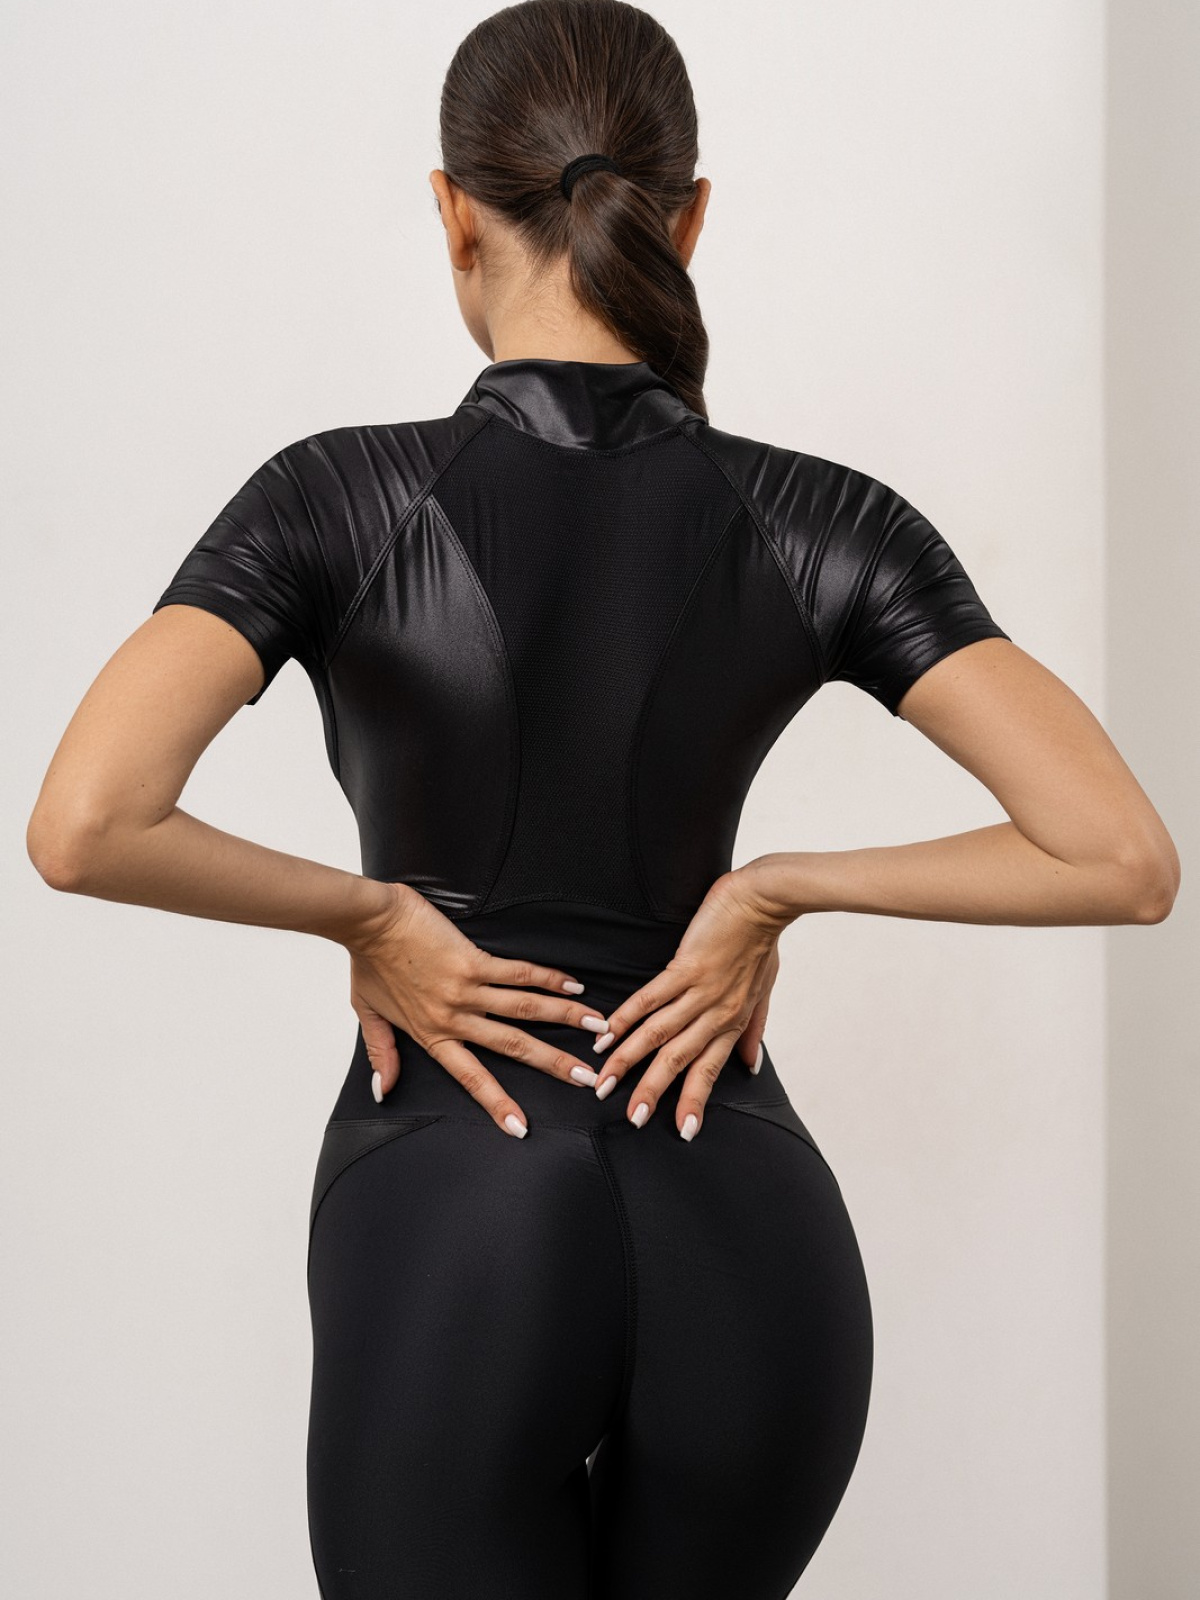 Комбинезон J-Suit Pandora Skin Black для спорта и фитнеса – фото №  10